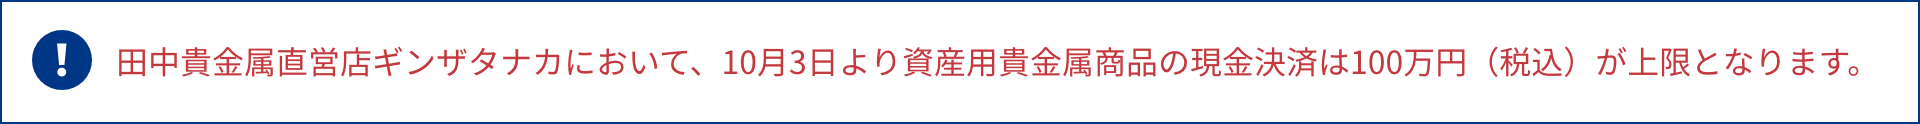 田中貴金属直営店ギンザタナカにおいて、10月3日より資産用貴金属商品の現金決済は100万円（税込）が上限となります。